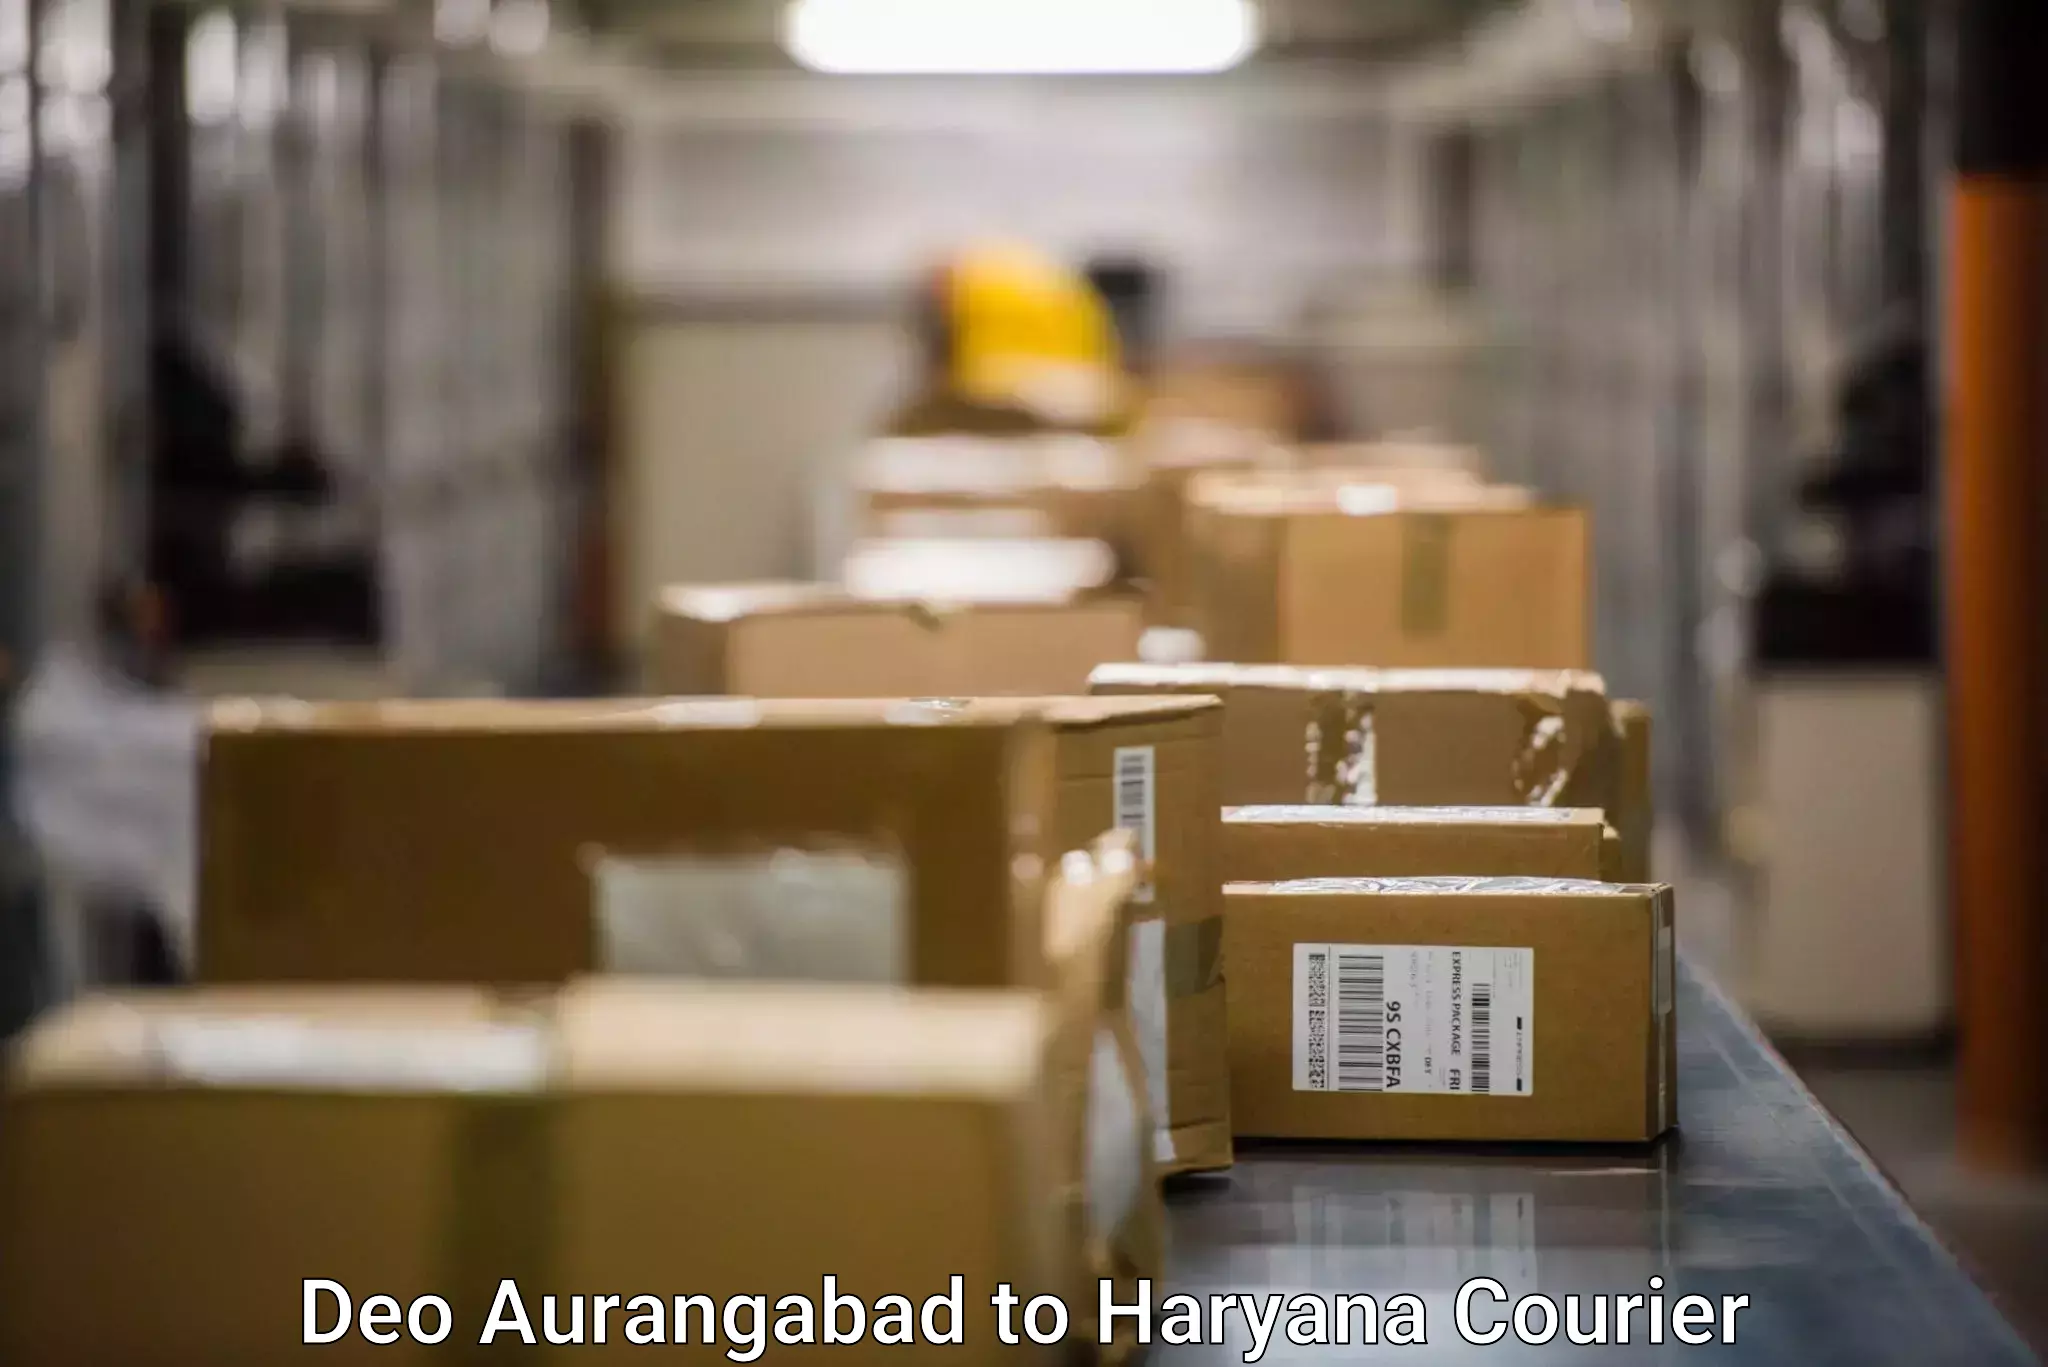 Flexible delivery scheduling Deo Aurangabad to Haryana